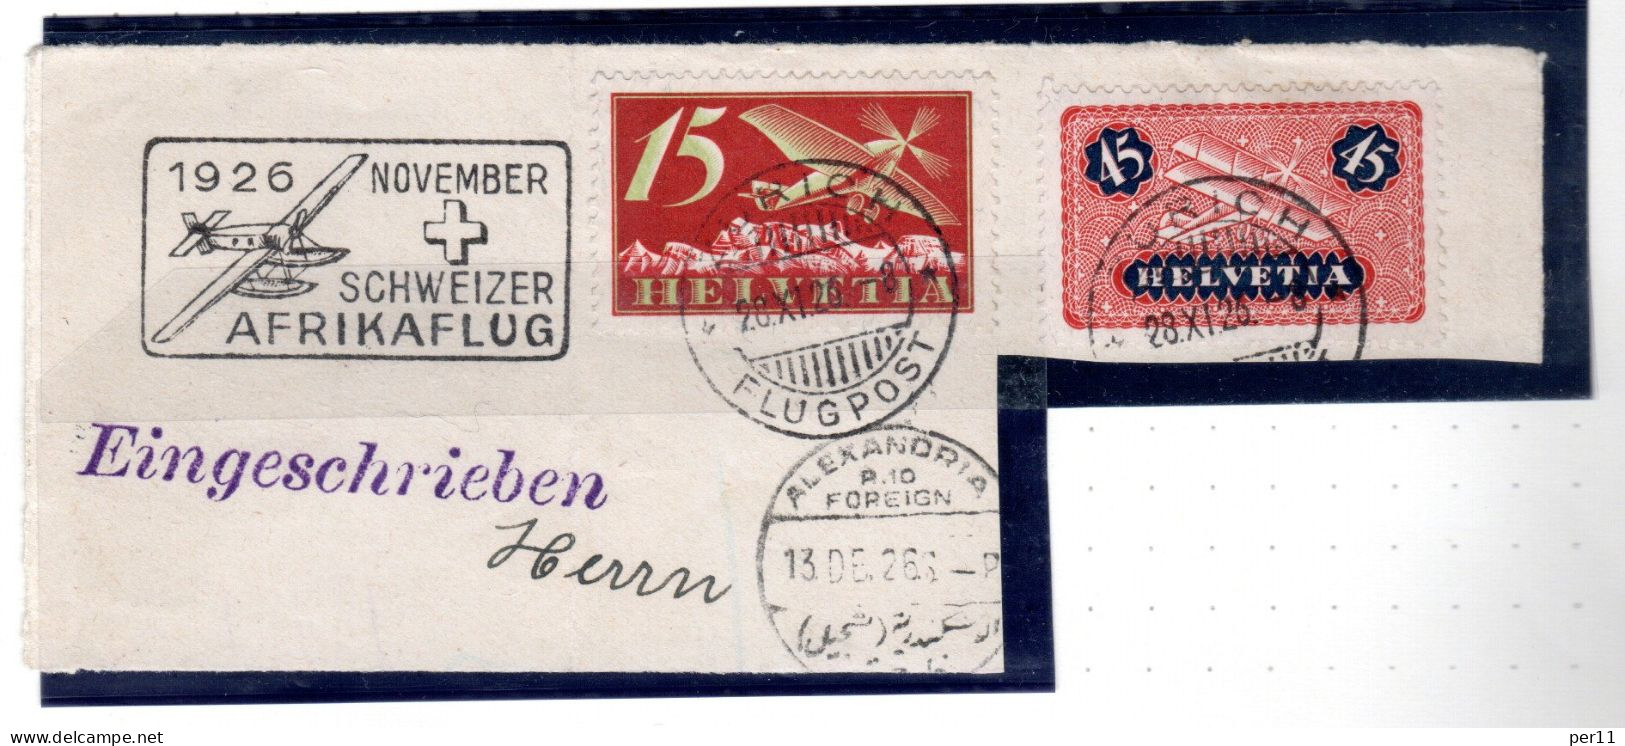 1926 November Afrikaflug , Part Of Registered Letter  (ch395) - Gebraucht